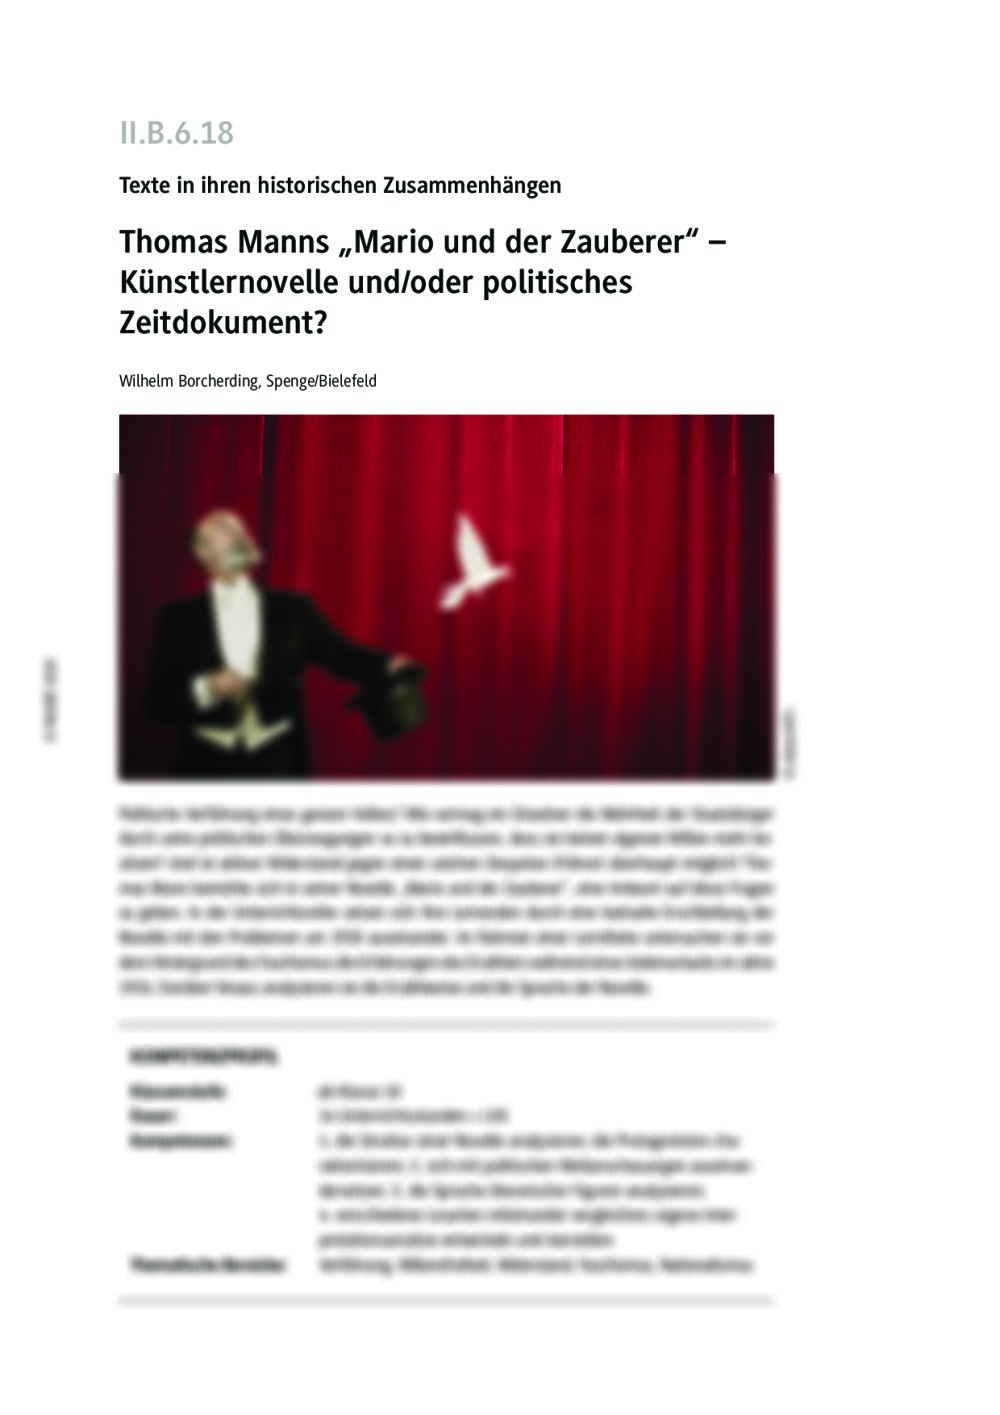 Thomas Manns "Mario und der Zauberer" - Seite 1